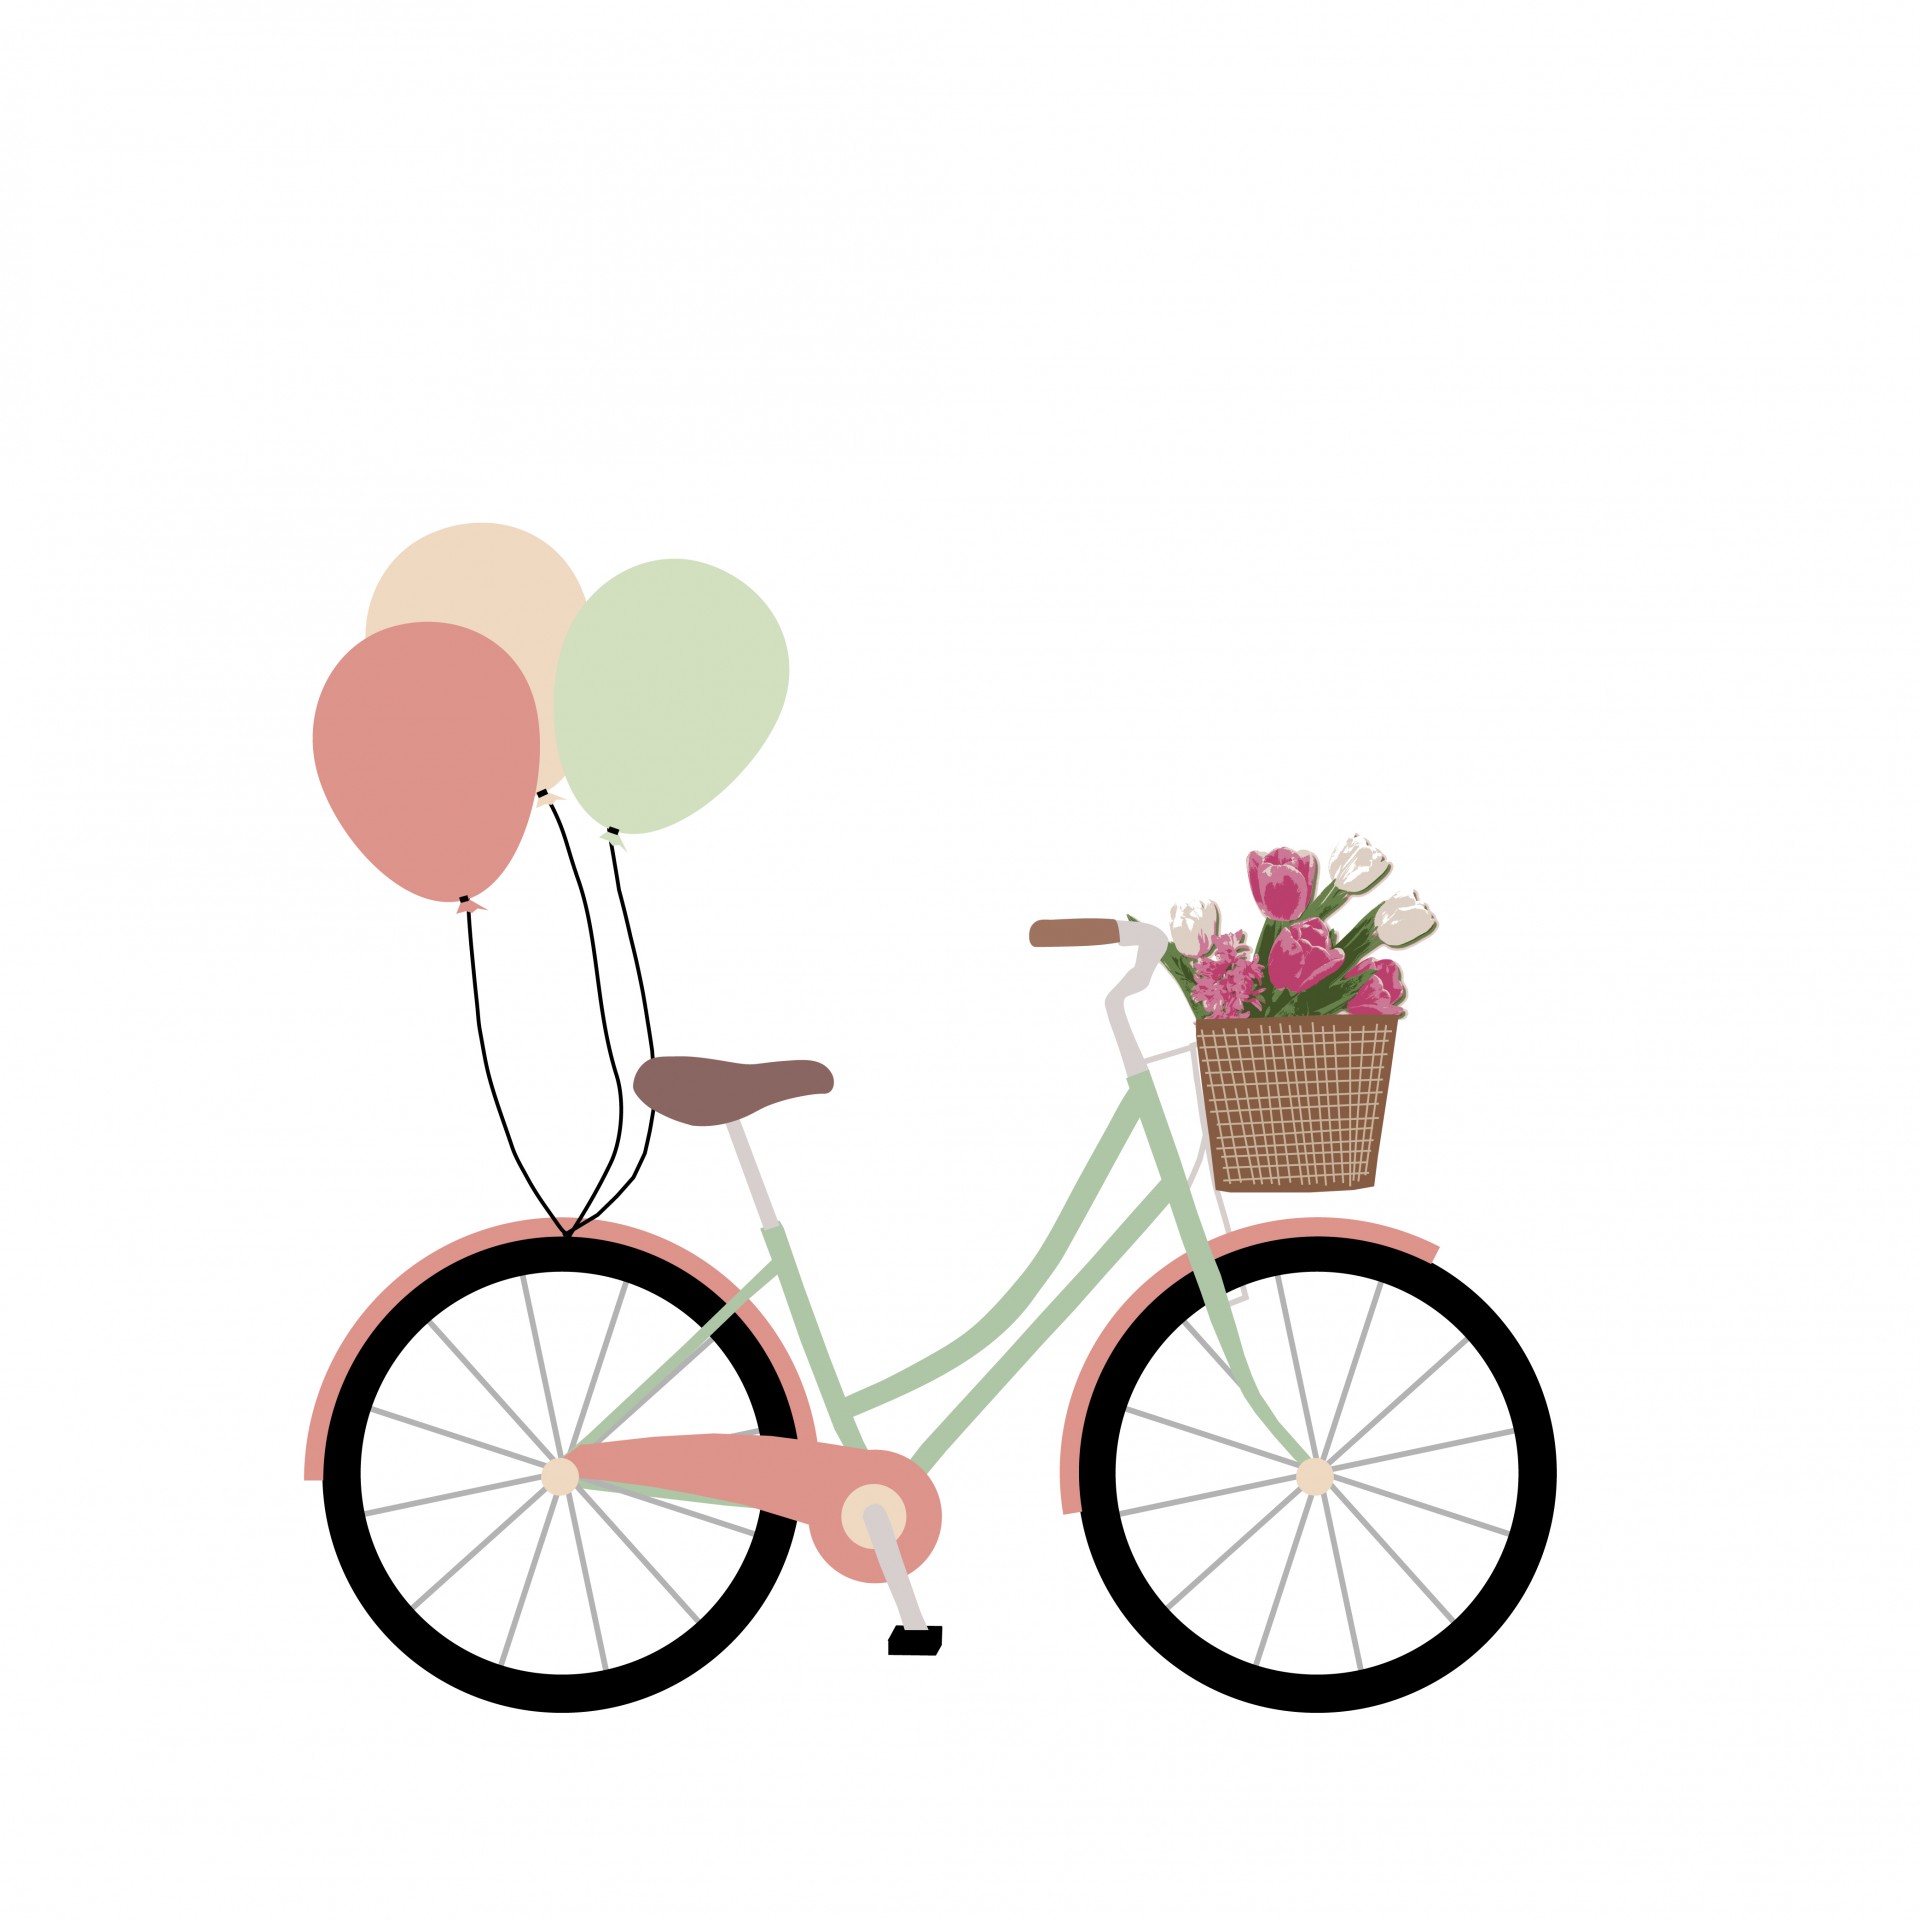 Bike clipart flower, Bike flower Transparent FREE for